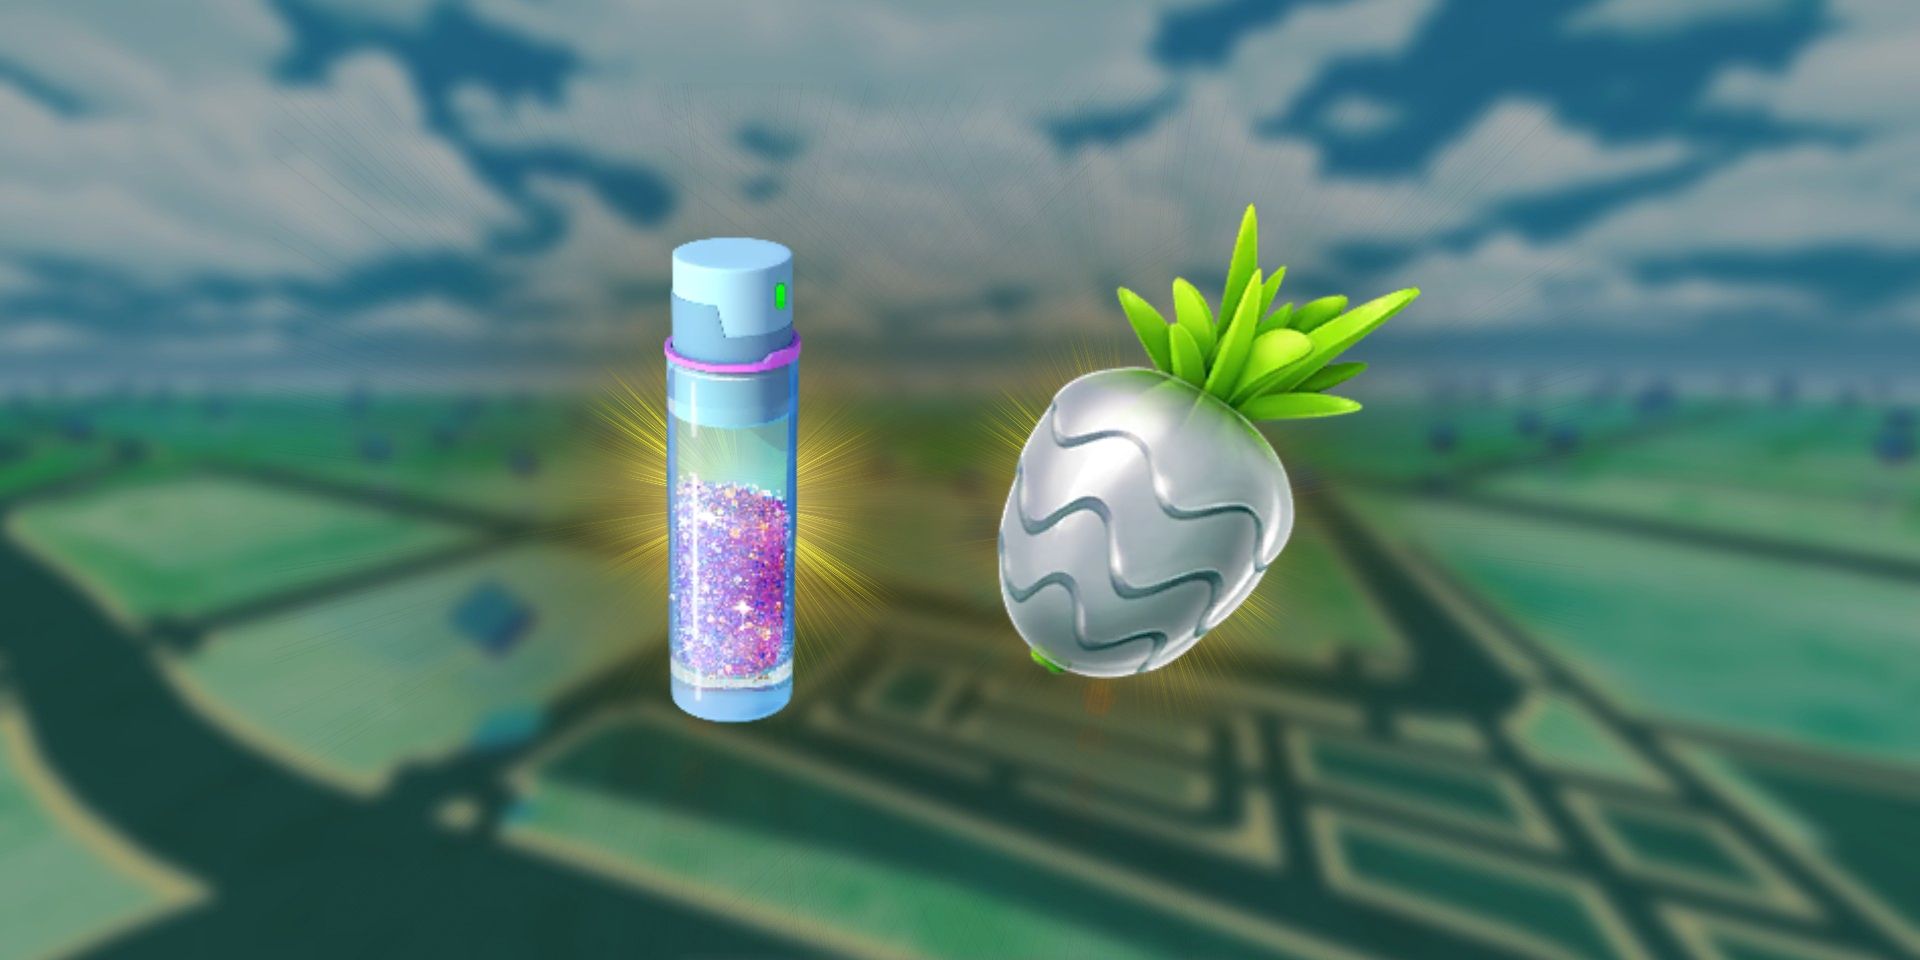 Stardust do Pokémon GO e um Silver Pinap Berry com o mapa Pokémon GO desfocado ao fundo.